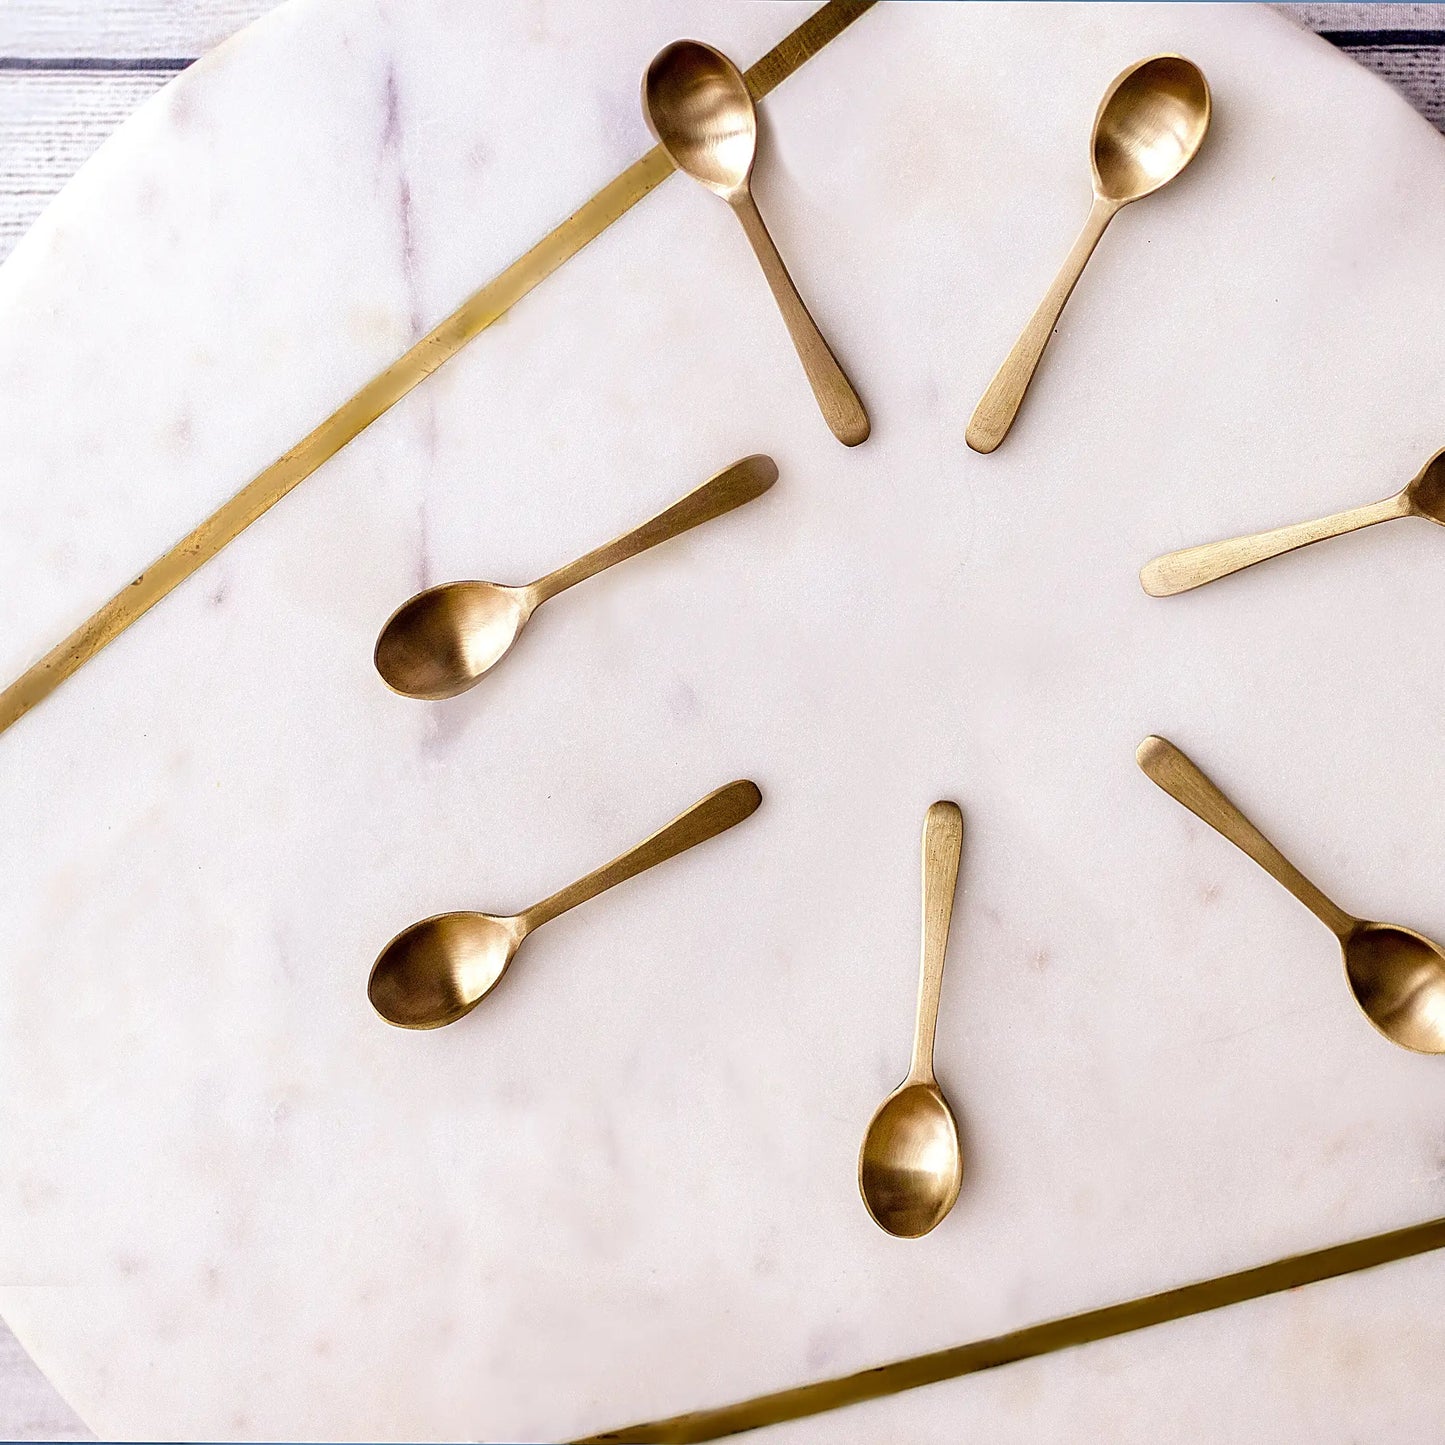 Handmade Artisanal Brass Spoons